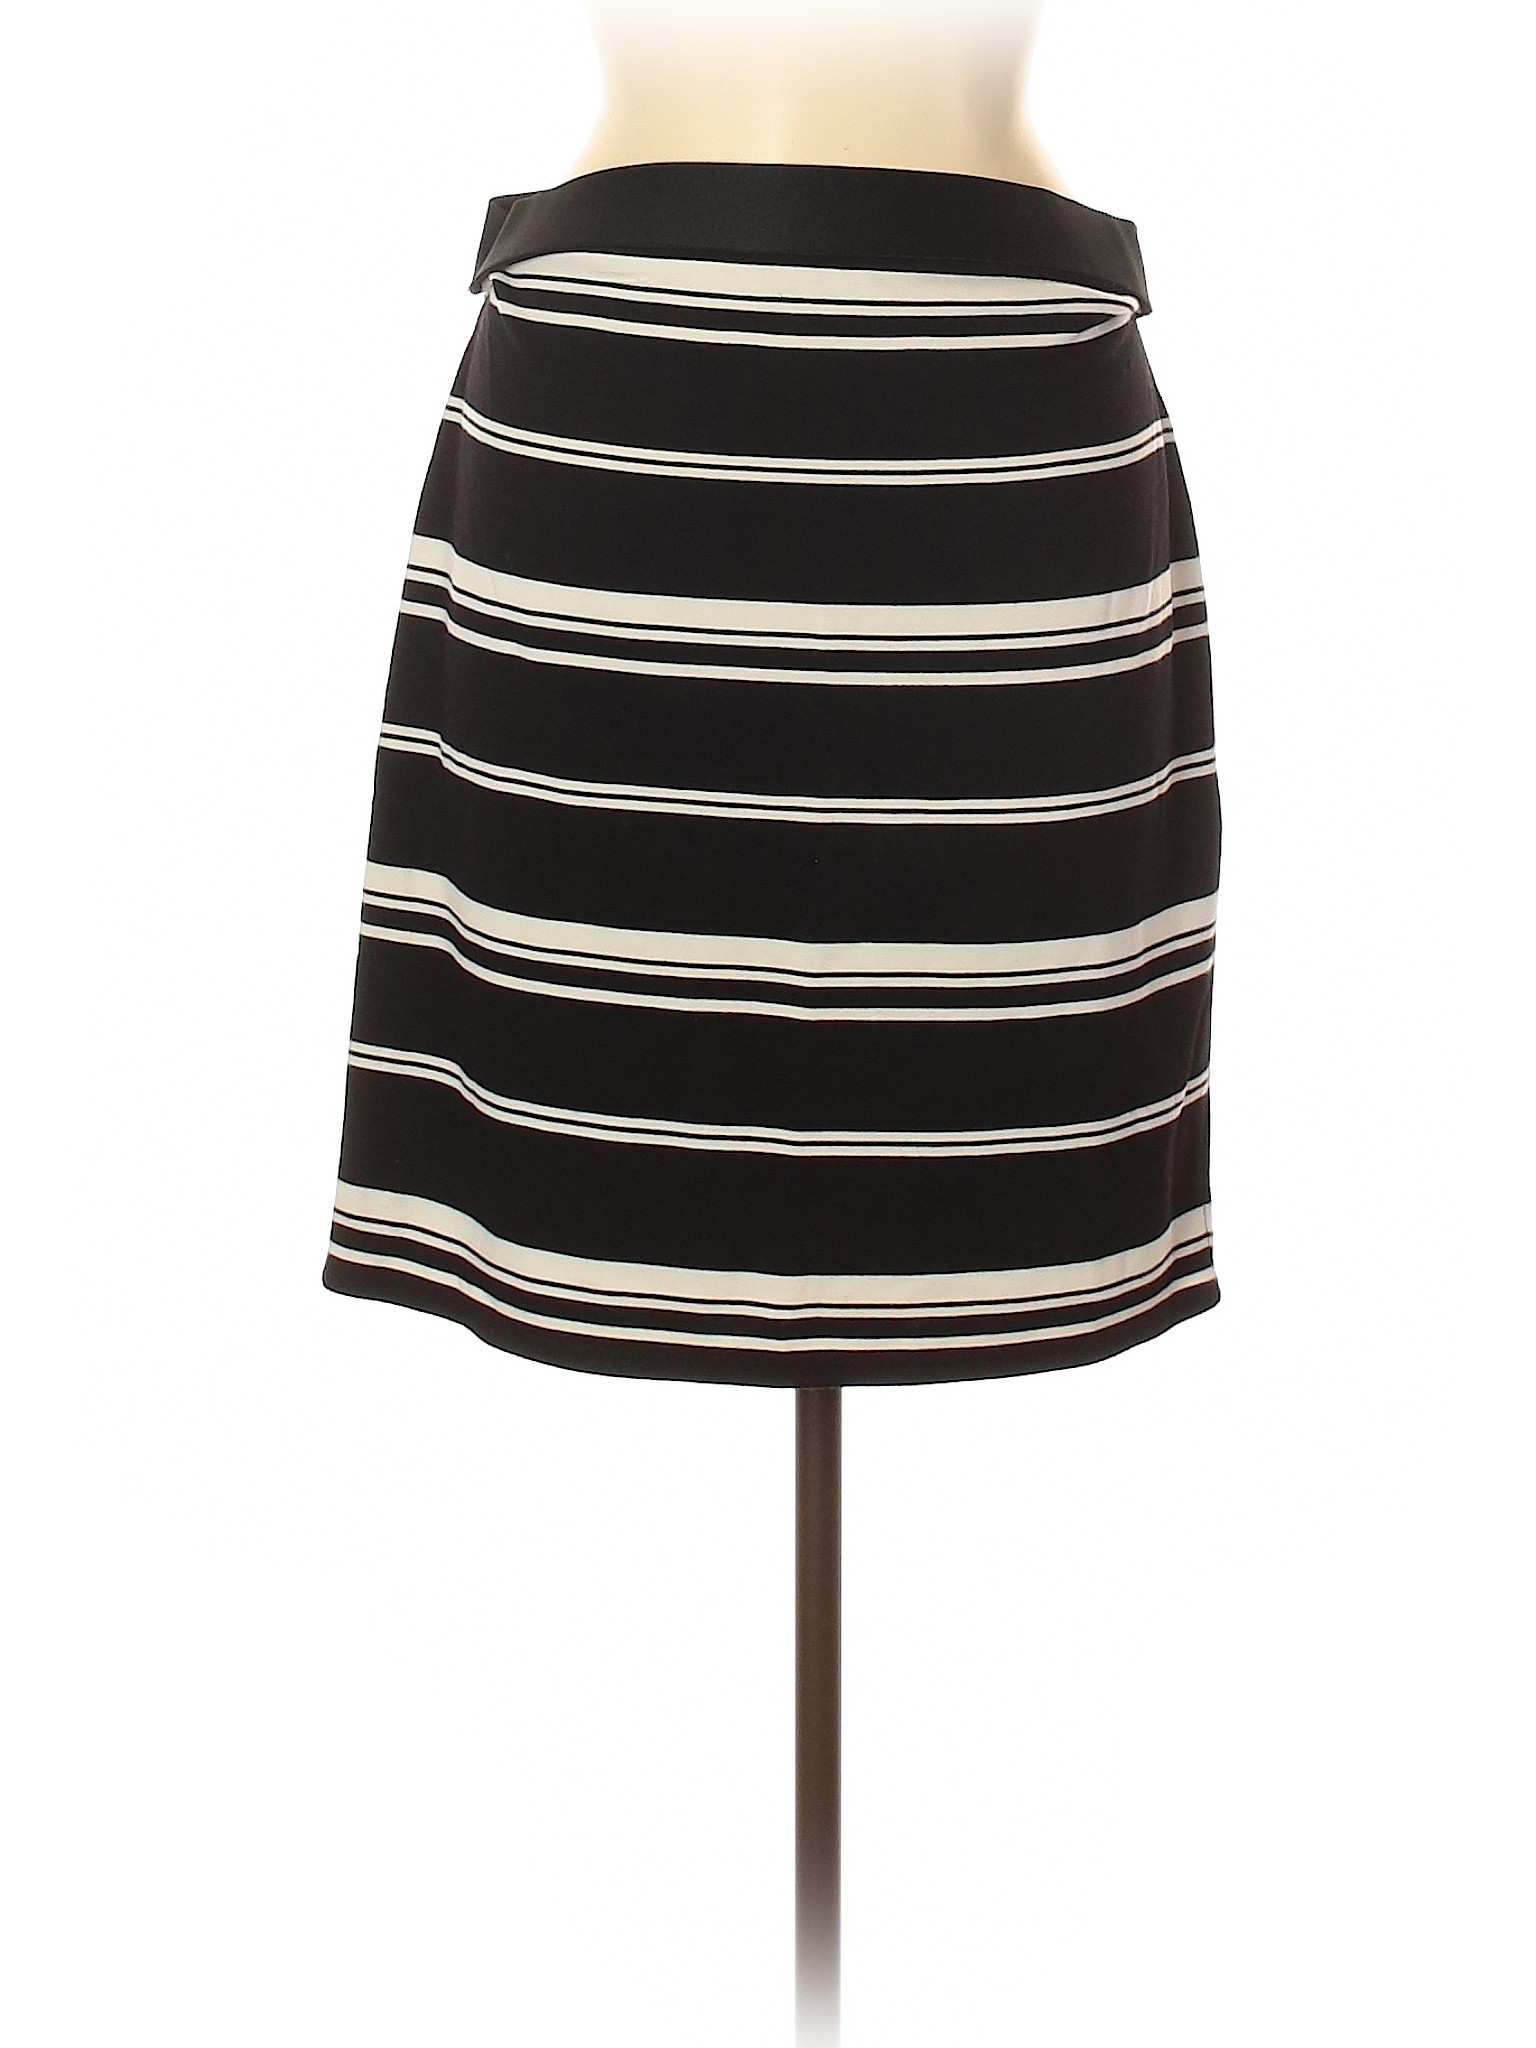 Dress Barn Women Black Casual Skirt Med Petite | eBay